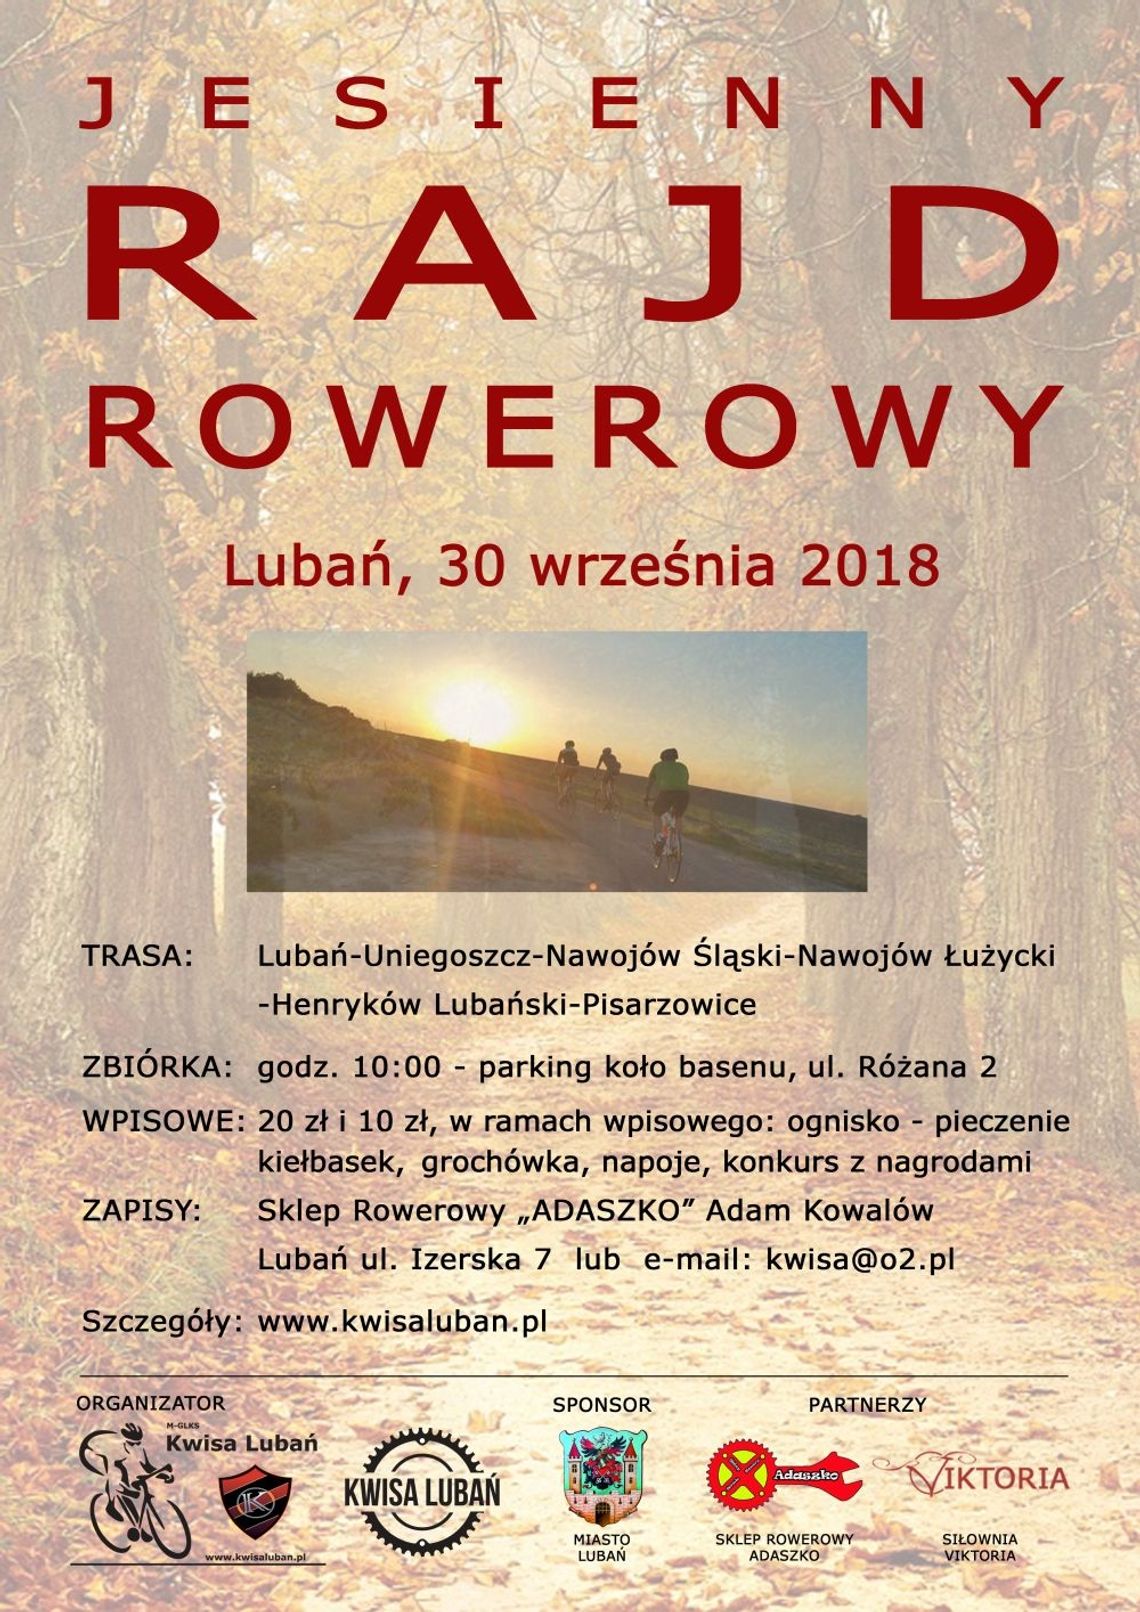 Jesienny Rajd Rowerowy 2018